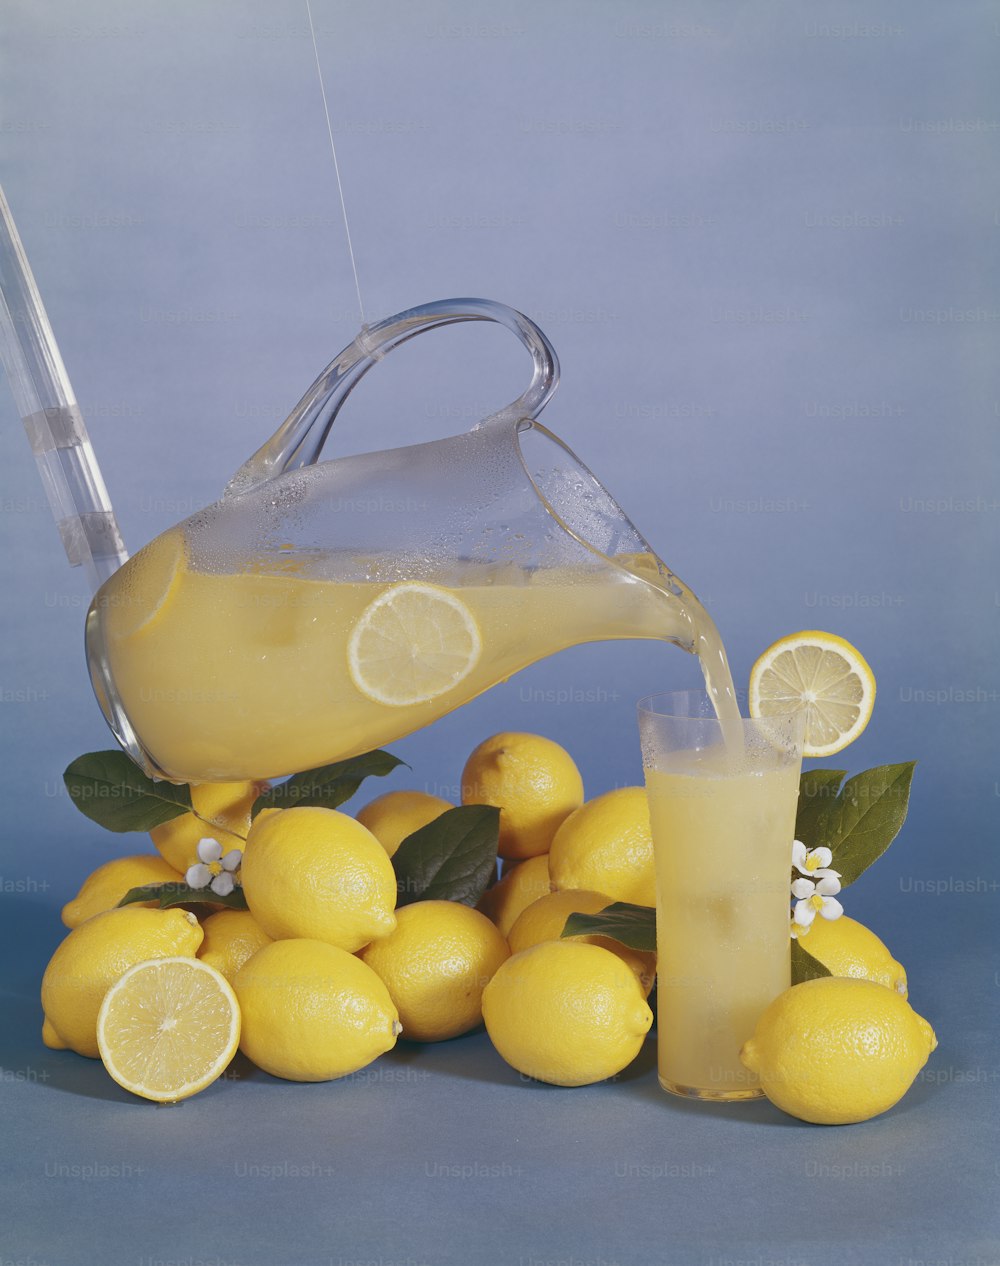 un pichet de limonade versé sur un tas de citrons